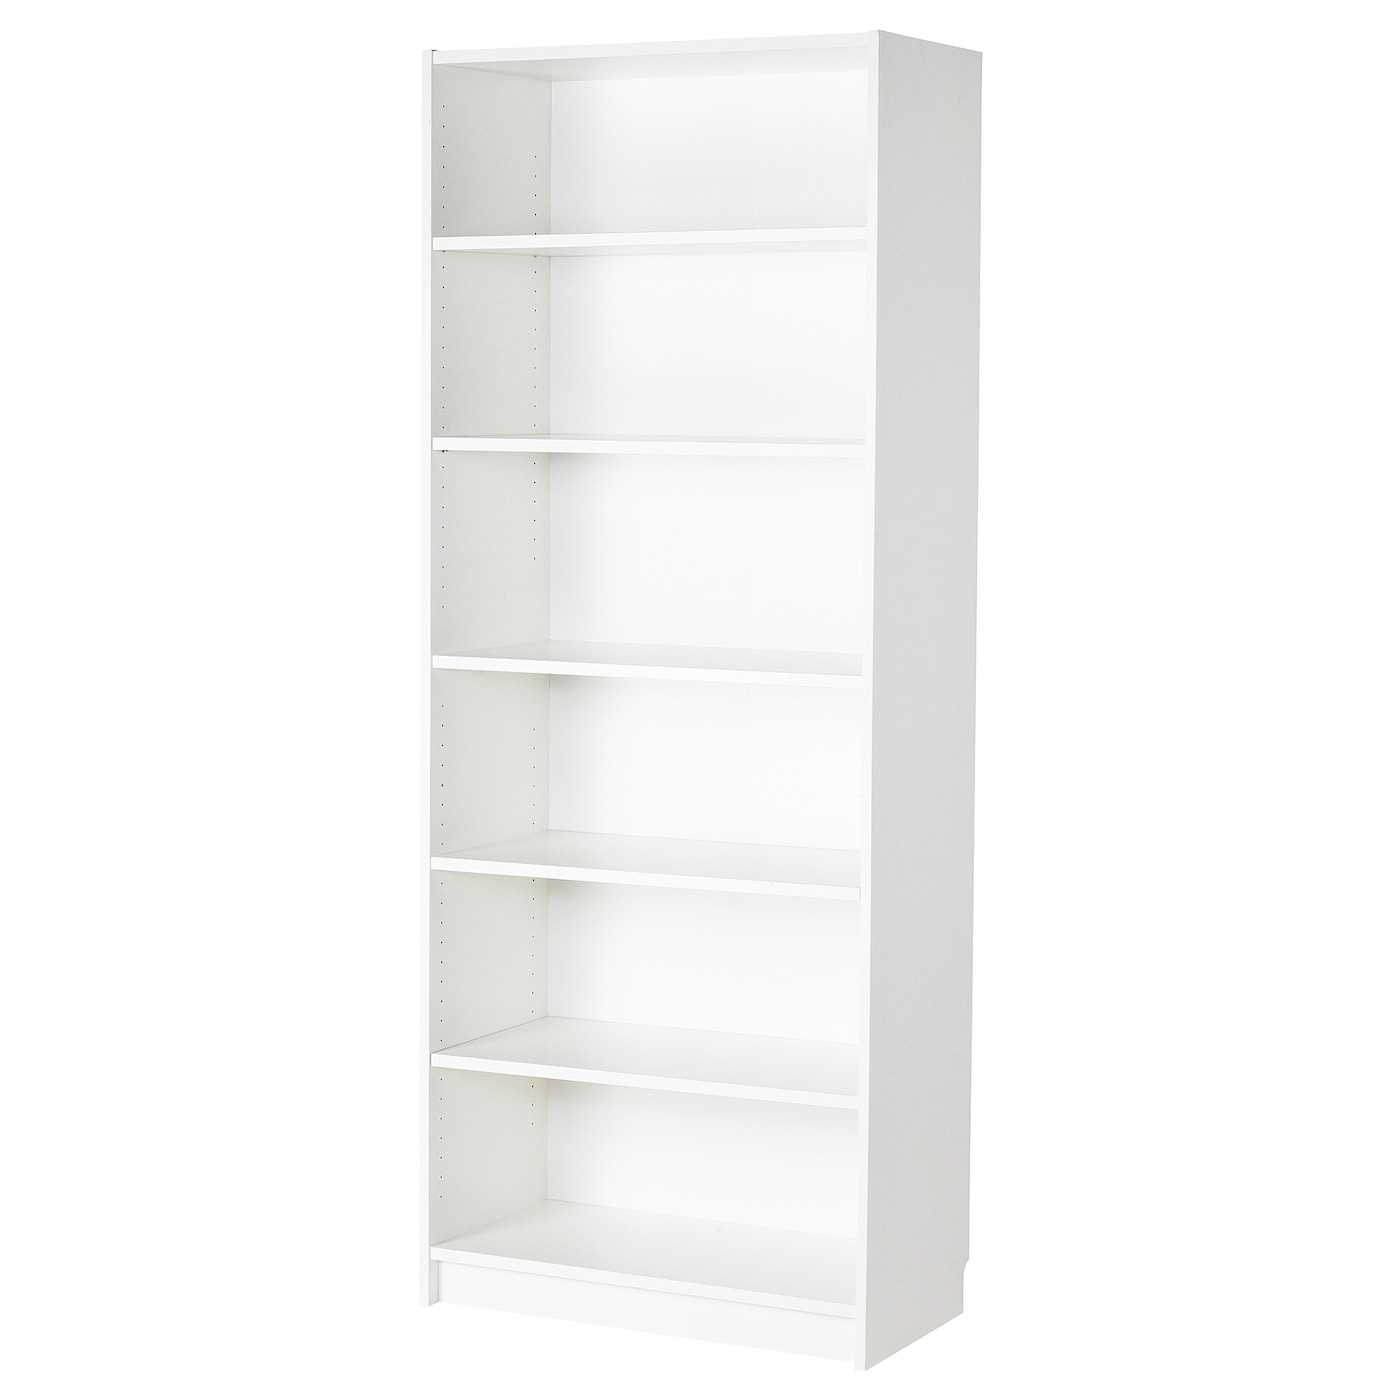 Открытый книжный шкаф - BILLY IKEA/БИЛЛИ ИКЕА, 40х80х202 см, белый